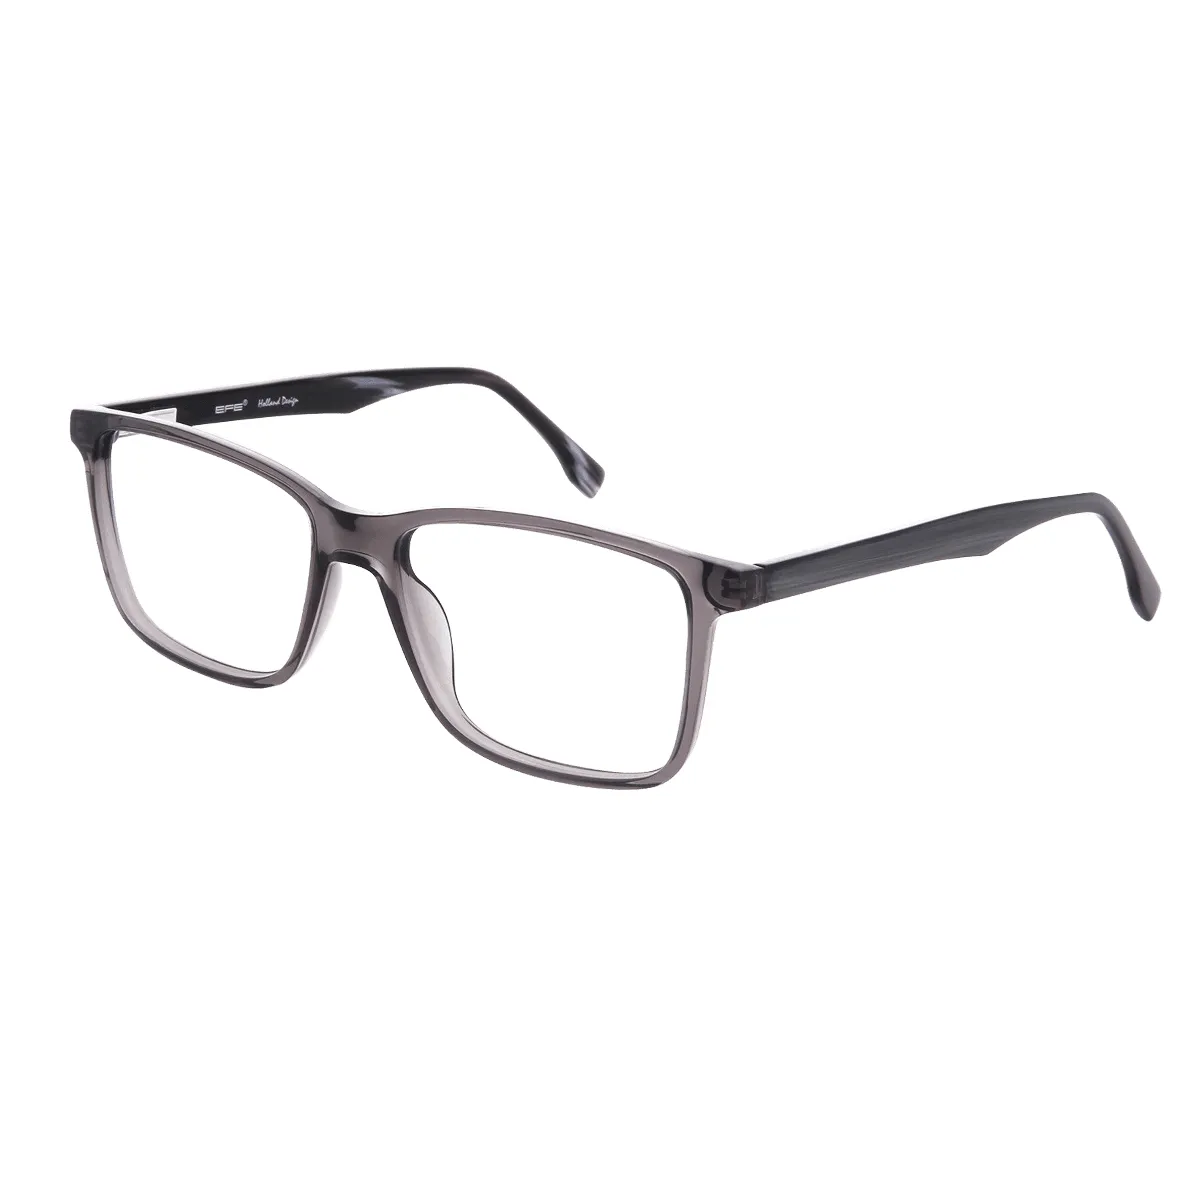 Decker - Square Gray Glasses for Men - EFE